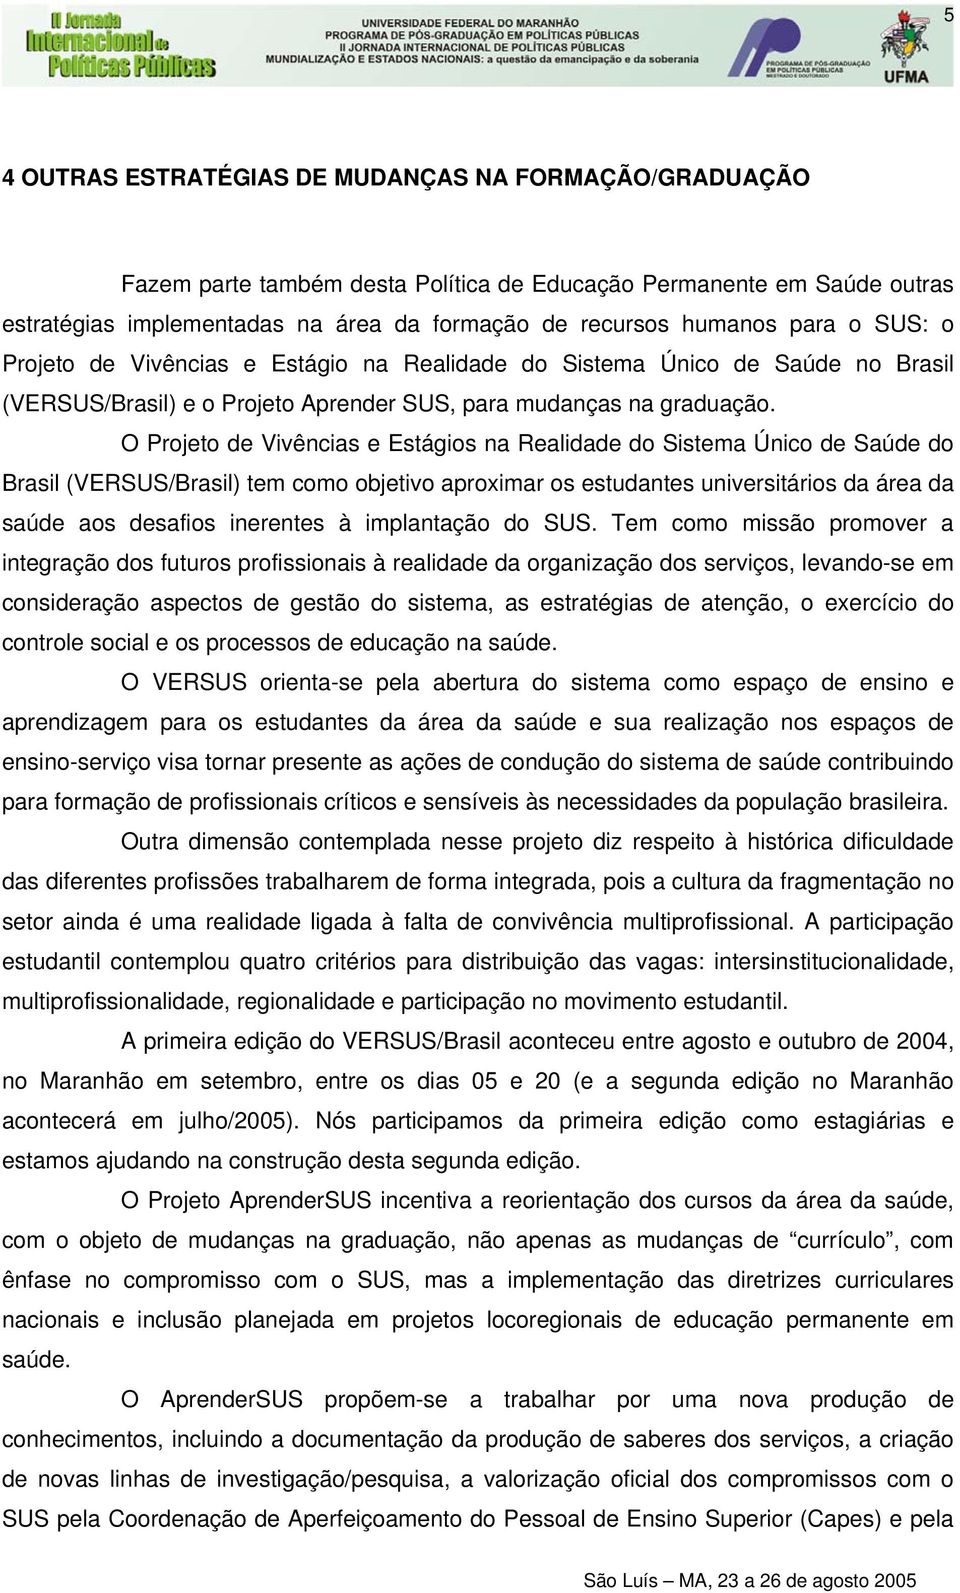 O Projeto de Vivências e Estágios na Realidade do Sistema Único de Saúde do Brasil (VERSUS/Brasil) tem como objetivo aproximar os estudantes universitários da área da saúde aos desafios inerentes à